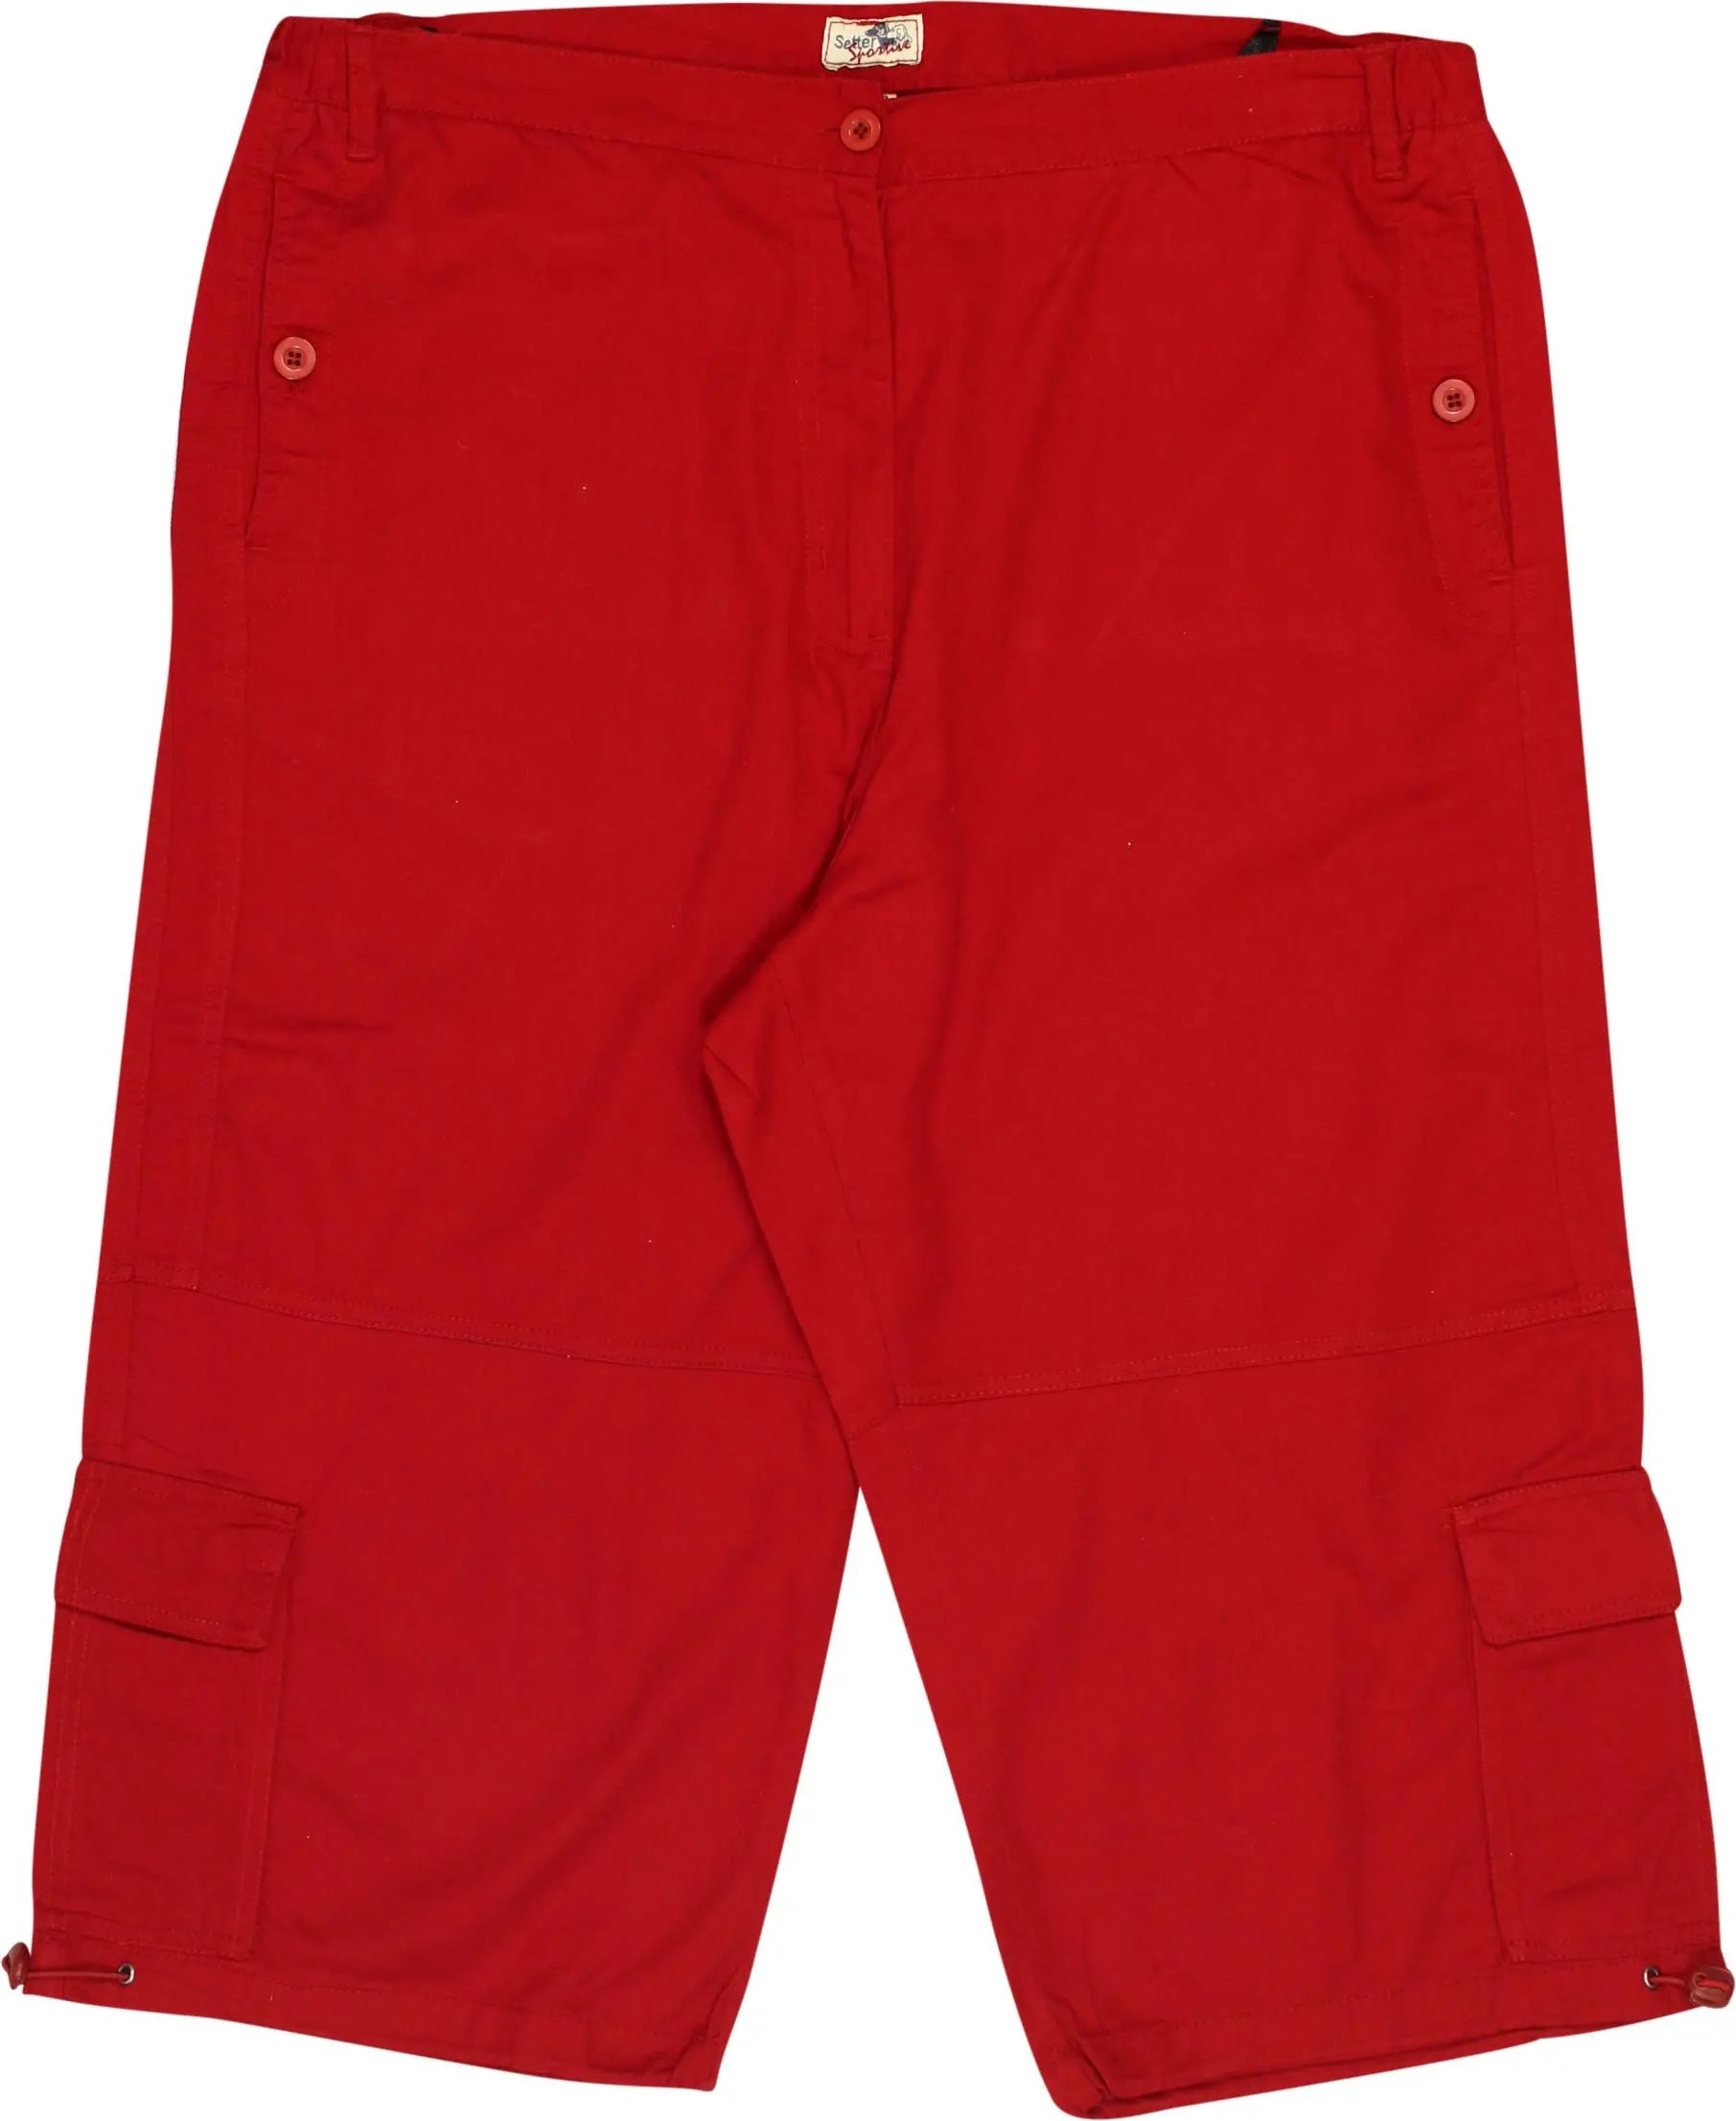 Janelle Plus Size 3/4 Length Capri Trousers Pants Shorts 16-24